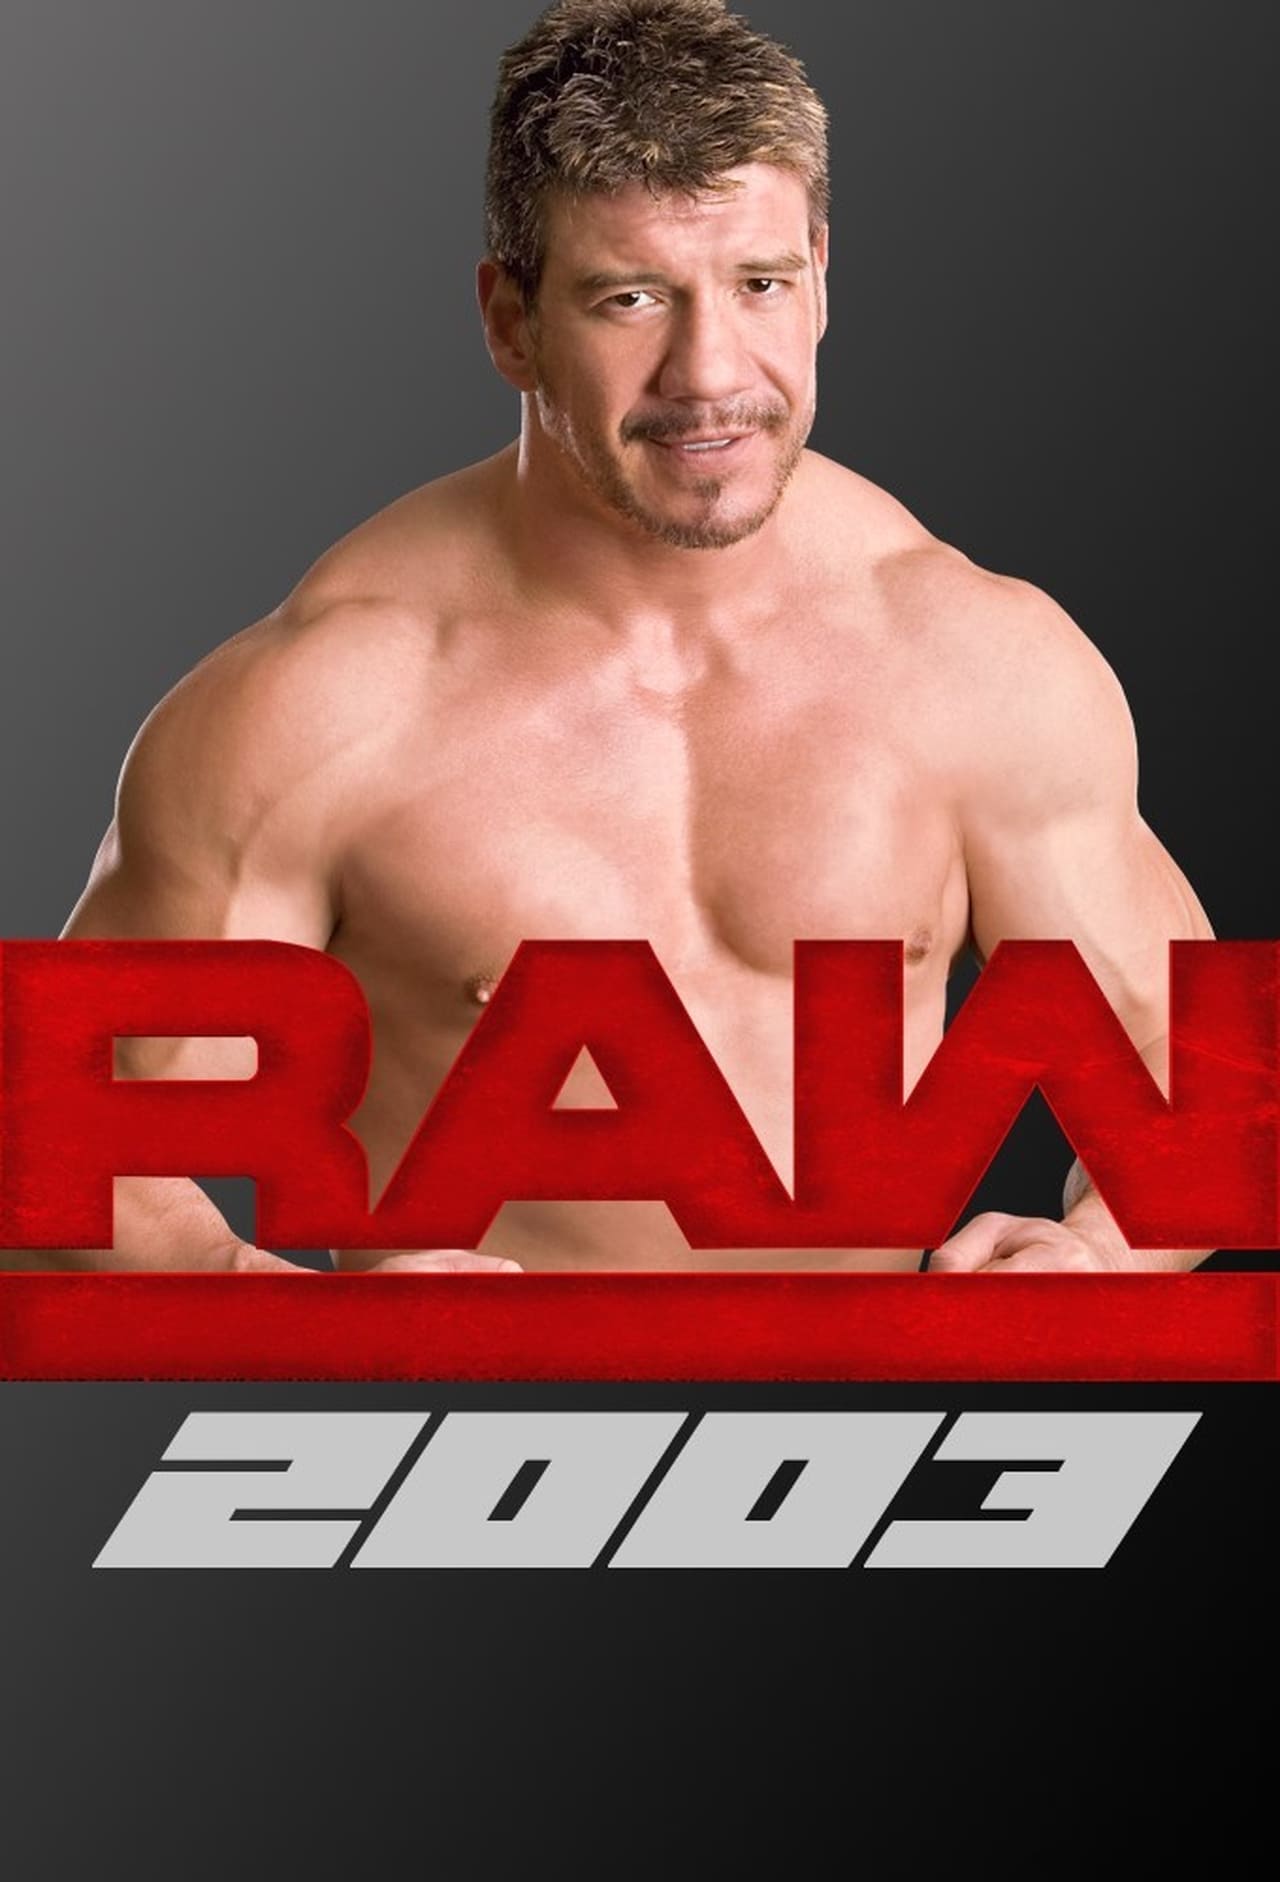 WWE Raw (2003)